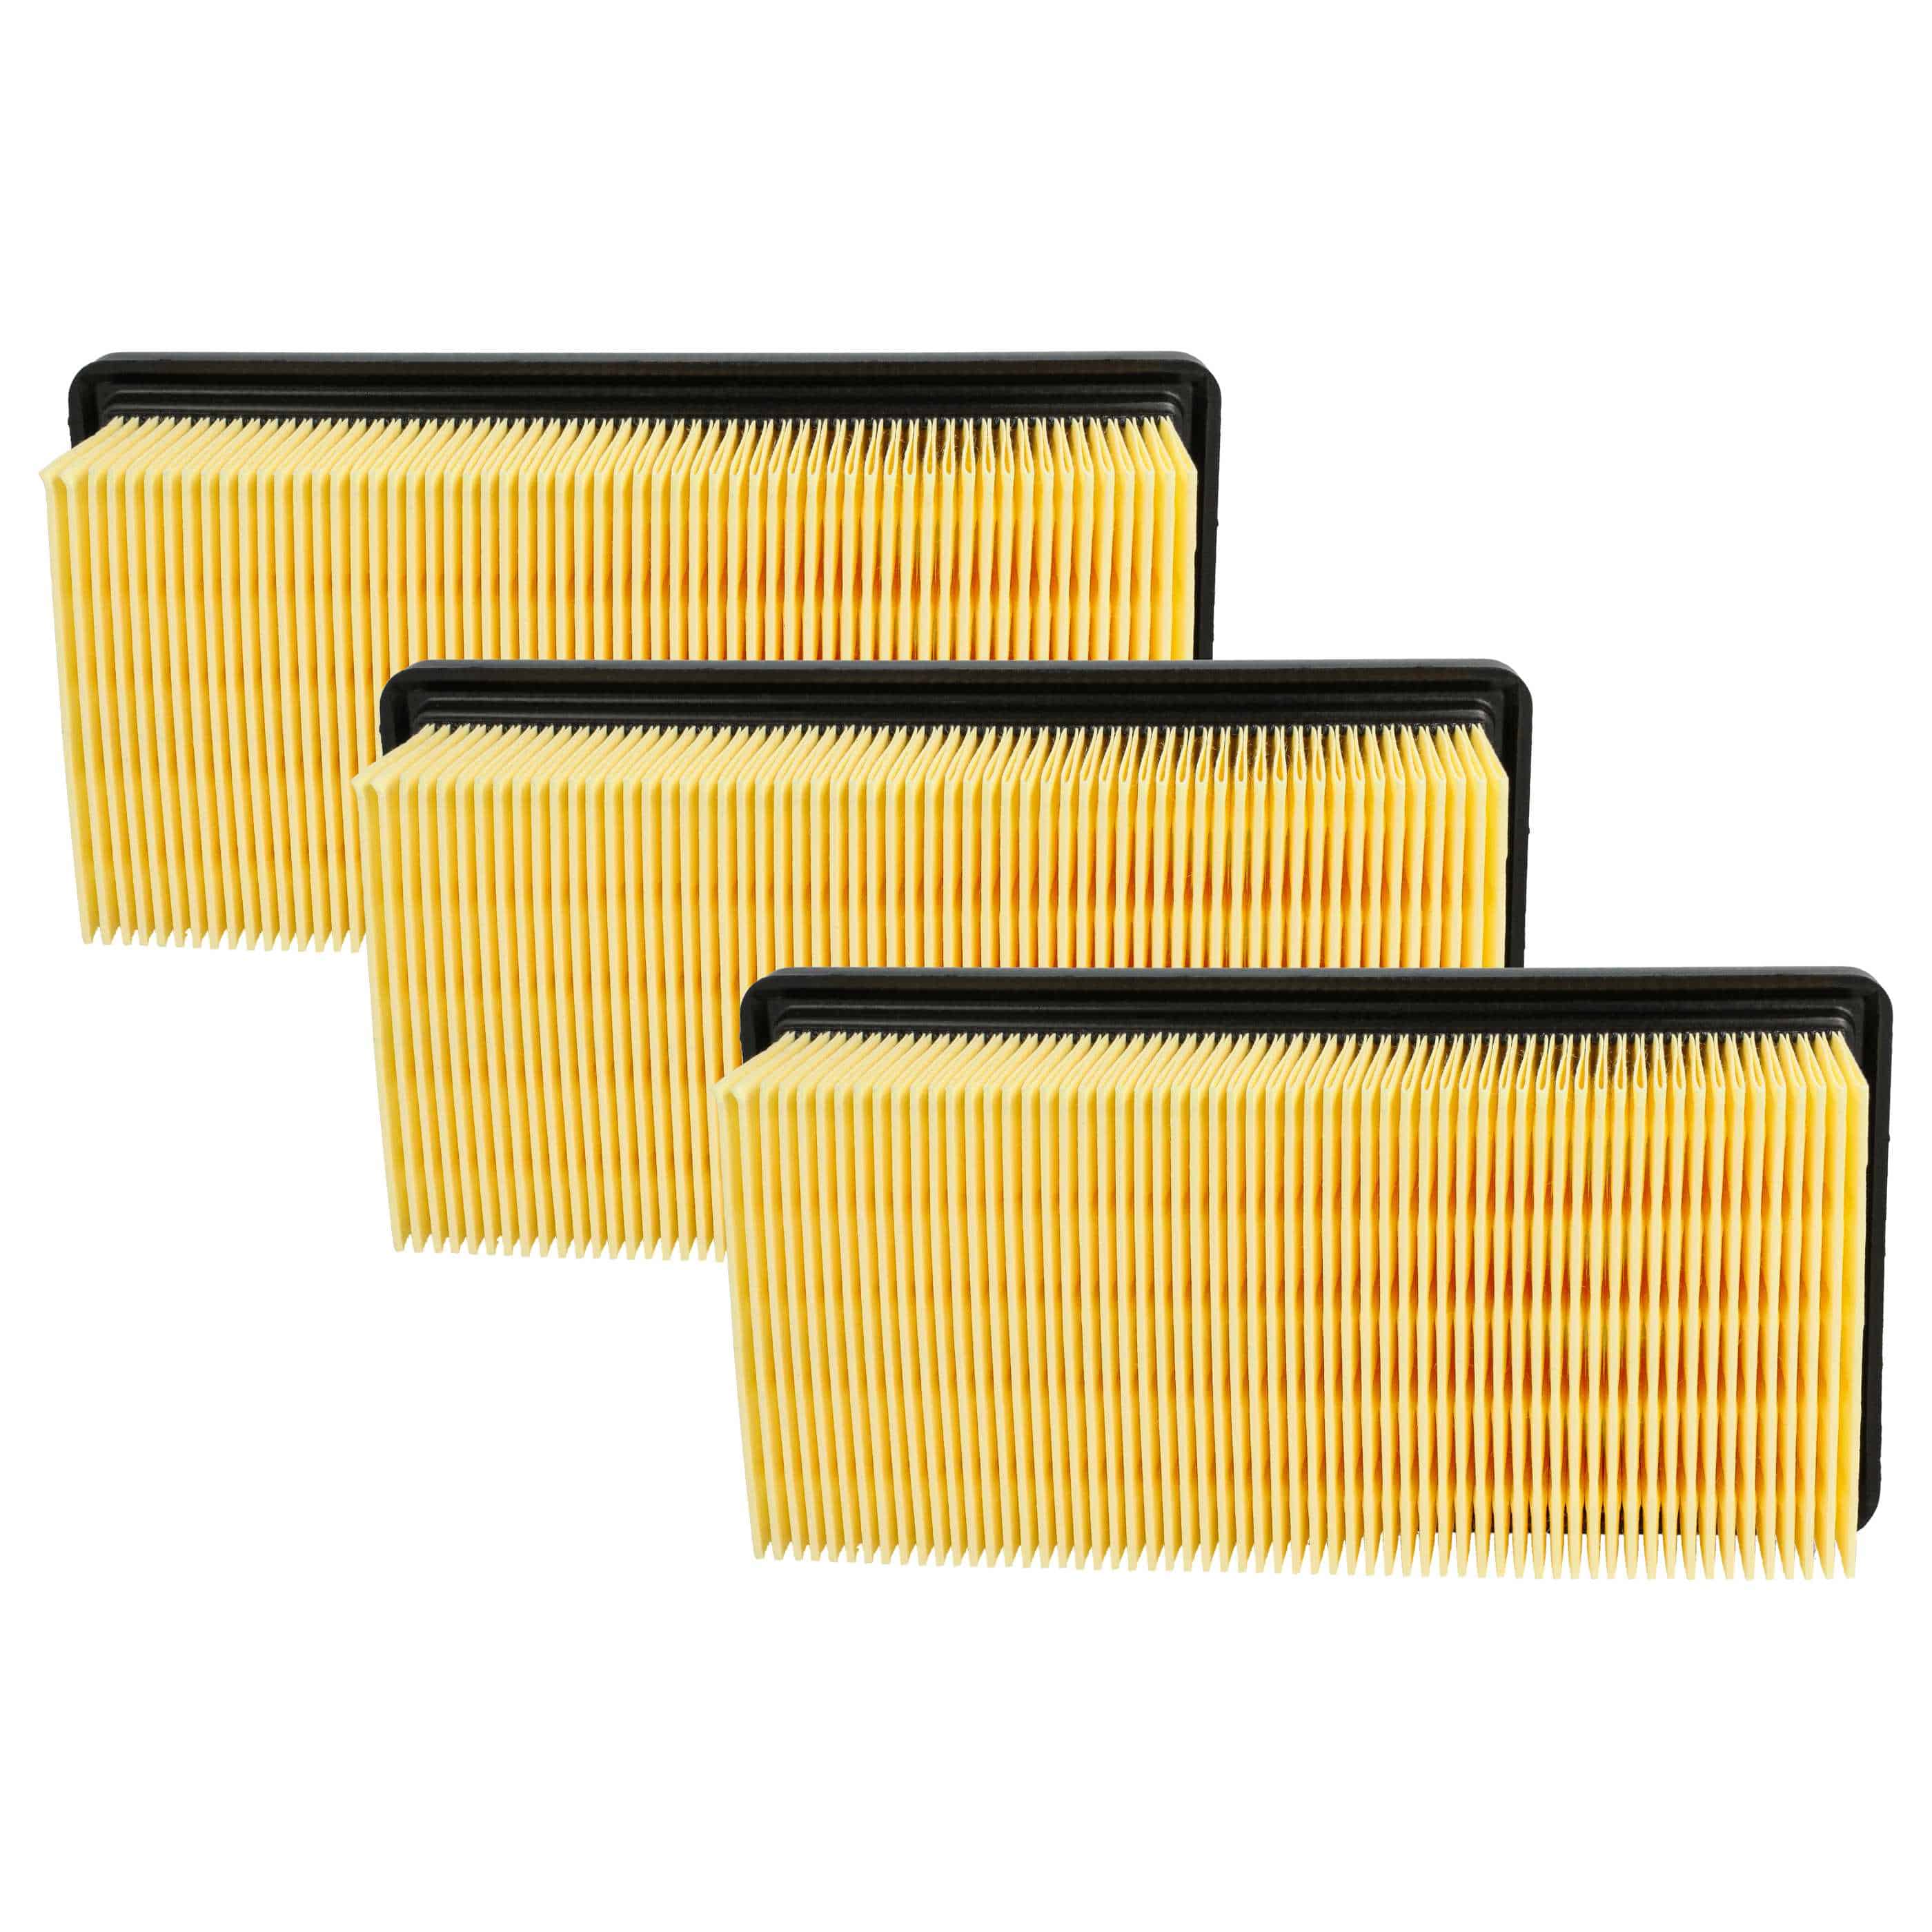 3x Flachfalten-Filter als Ersatz für Kärcher 6.414-971.0 für Kärcher Staubsauger